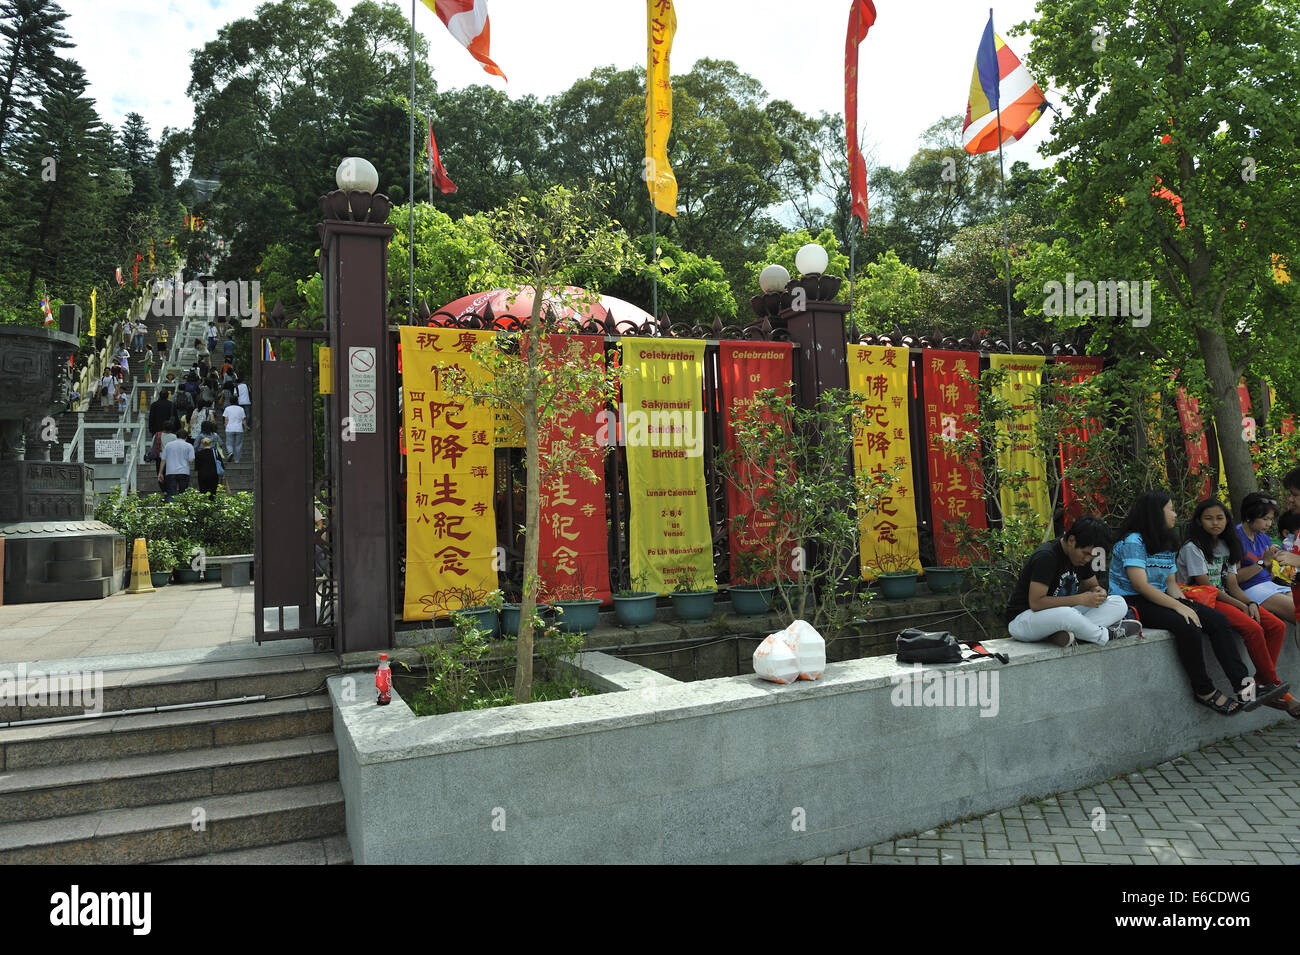 Bannières et drapeaux dans la célébration de la naissance de Bouddha. Tian Tan Buddha, Ngong Ping, Lantau Island, Hong Kong, Chine Banque D'Images